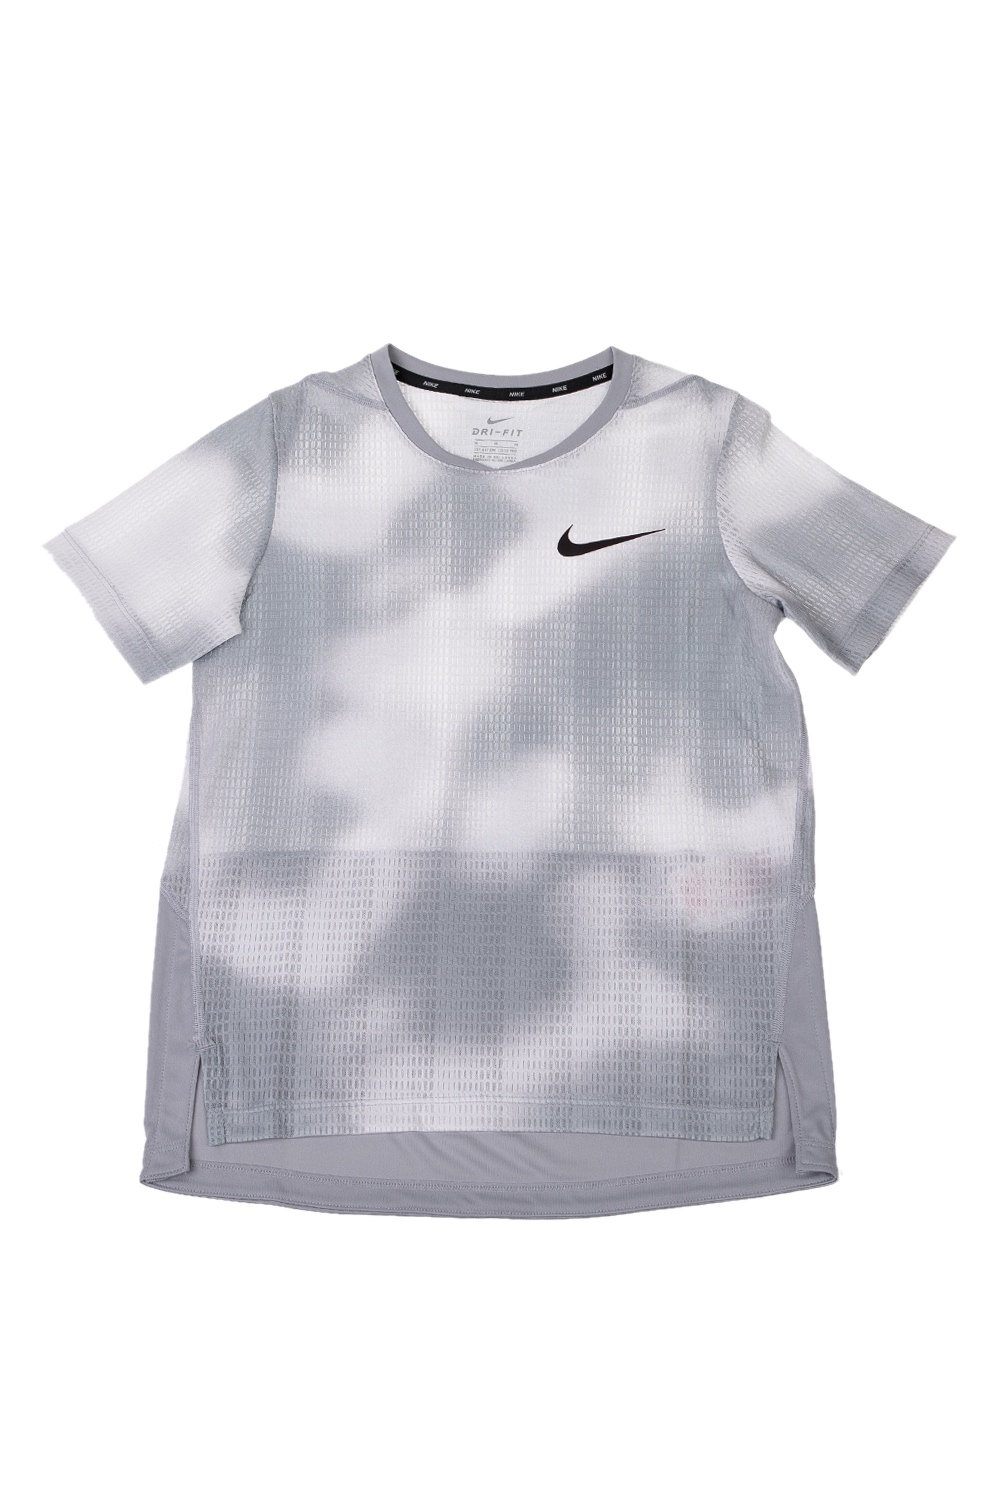 Παιδικά/Boys/Ρούχα/Αθλητικά NIKE - Παιδική μπλούζα NIKE λευκή γκρι